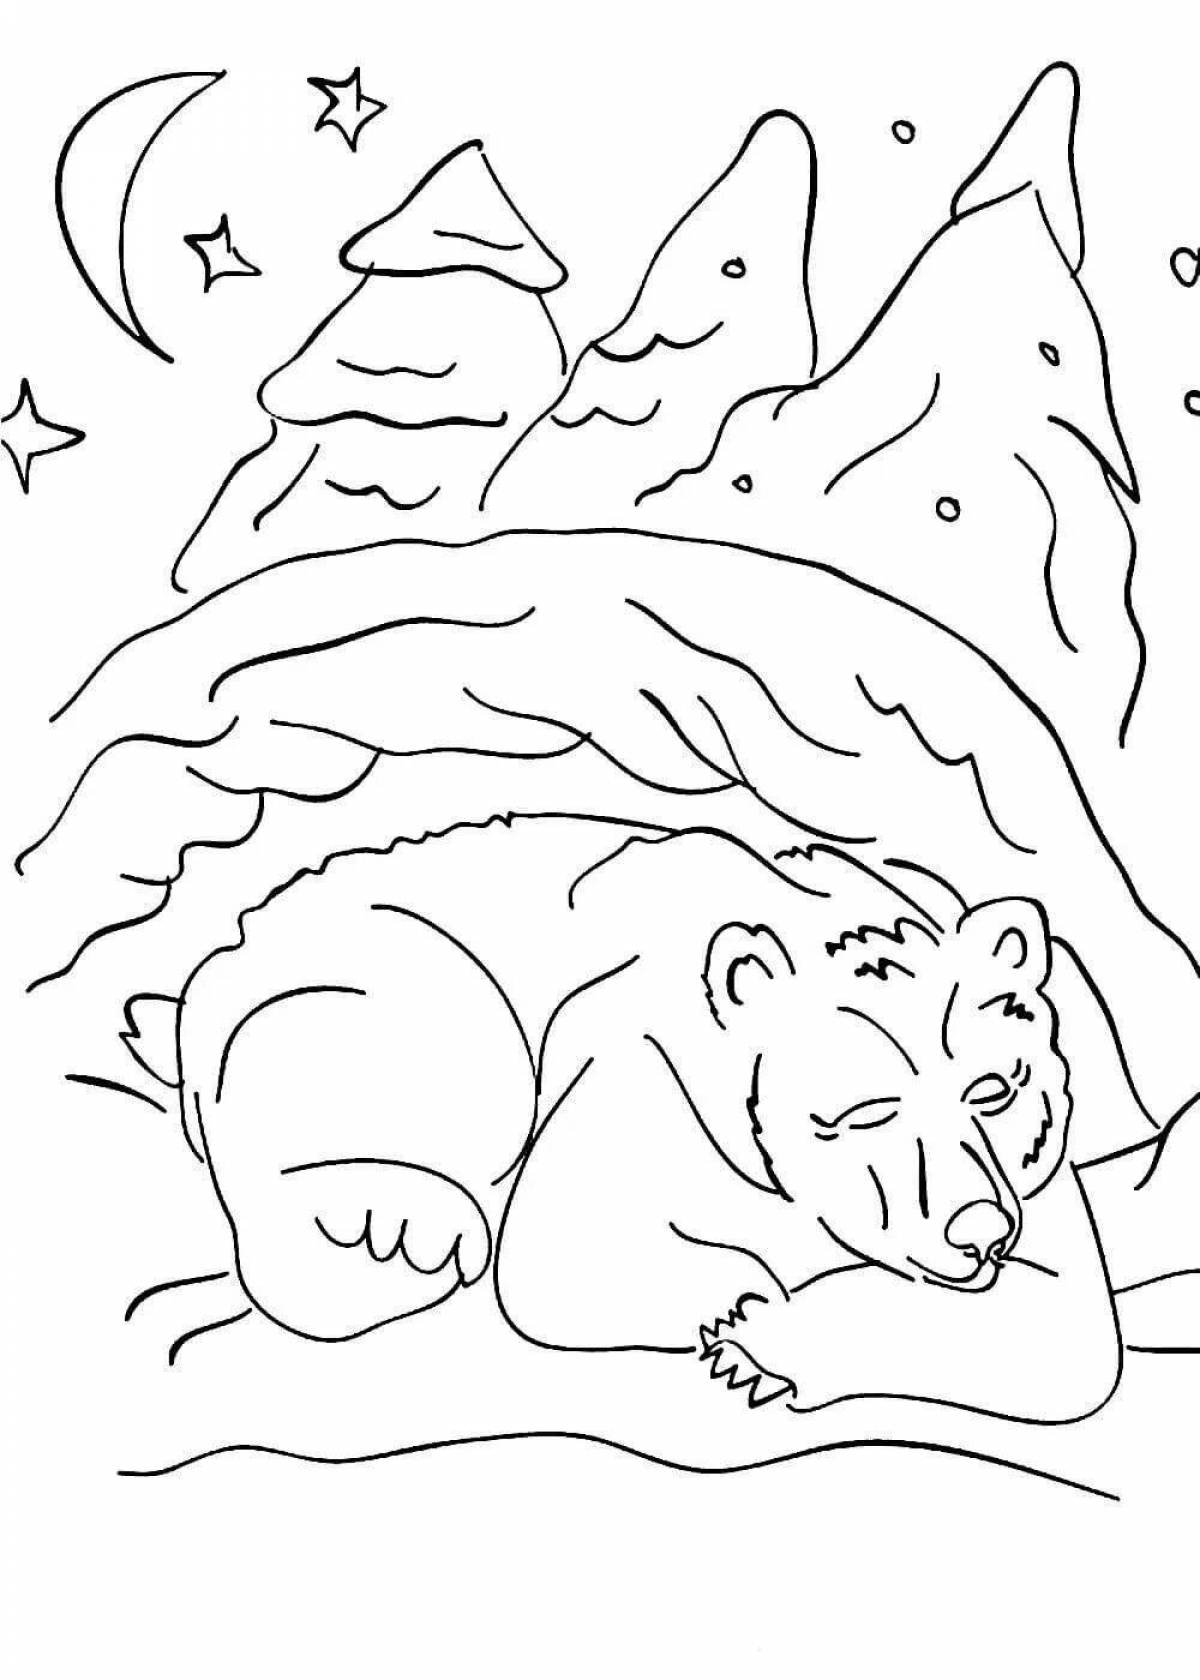 Увлекательная раскраска о том, как животные впадают в спячку